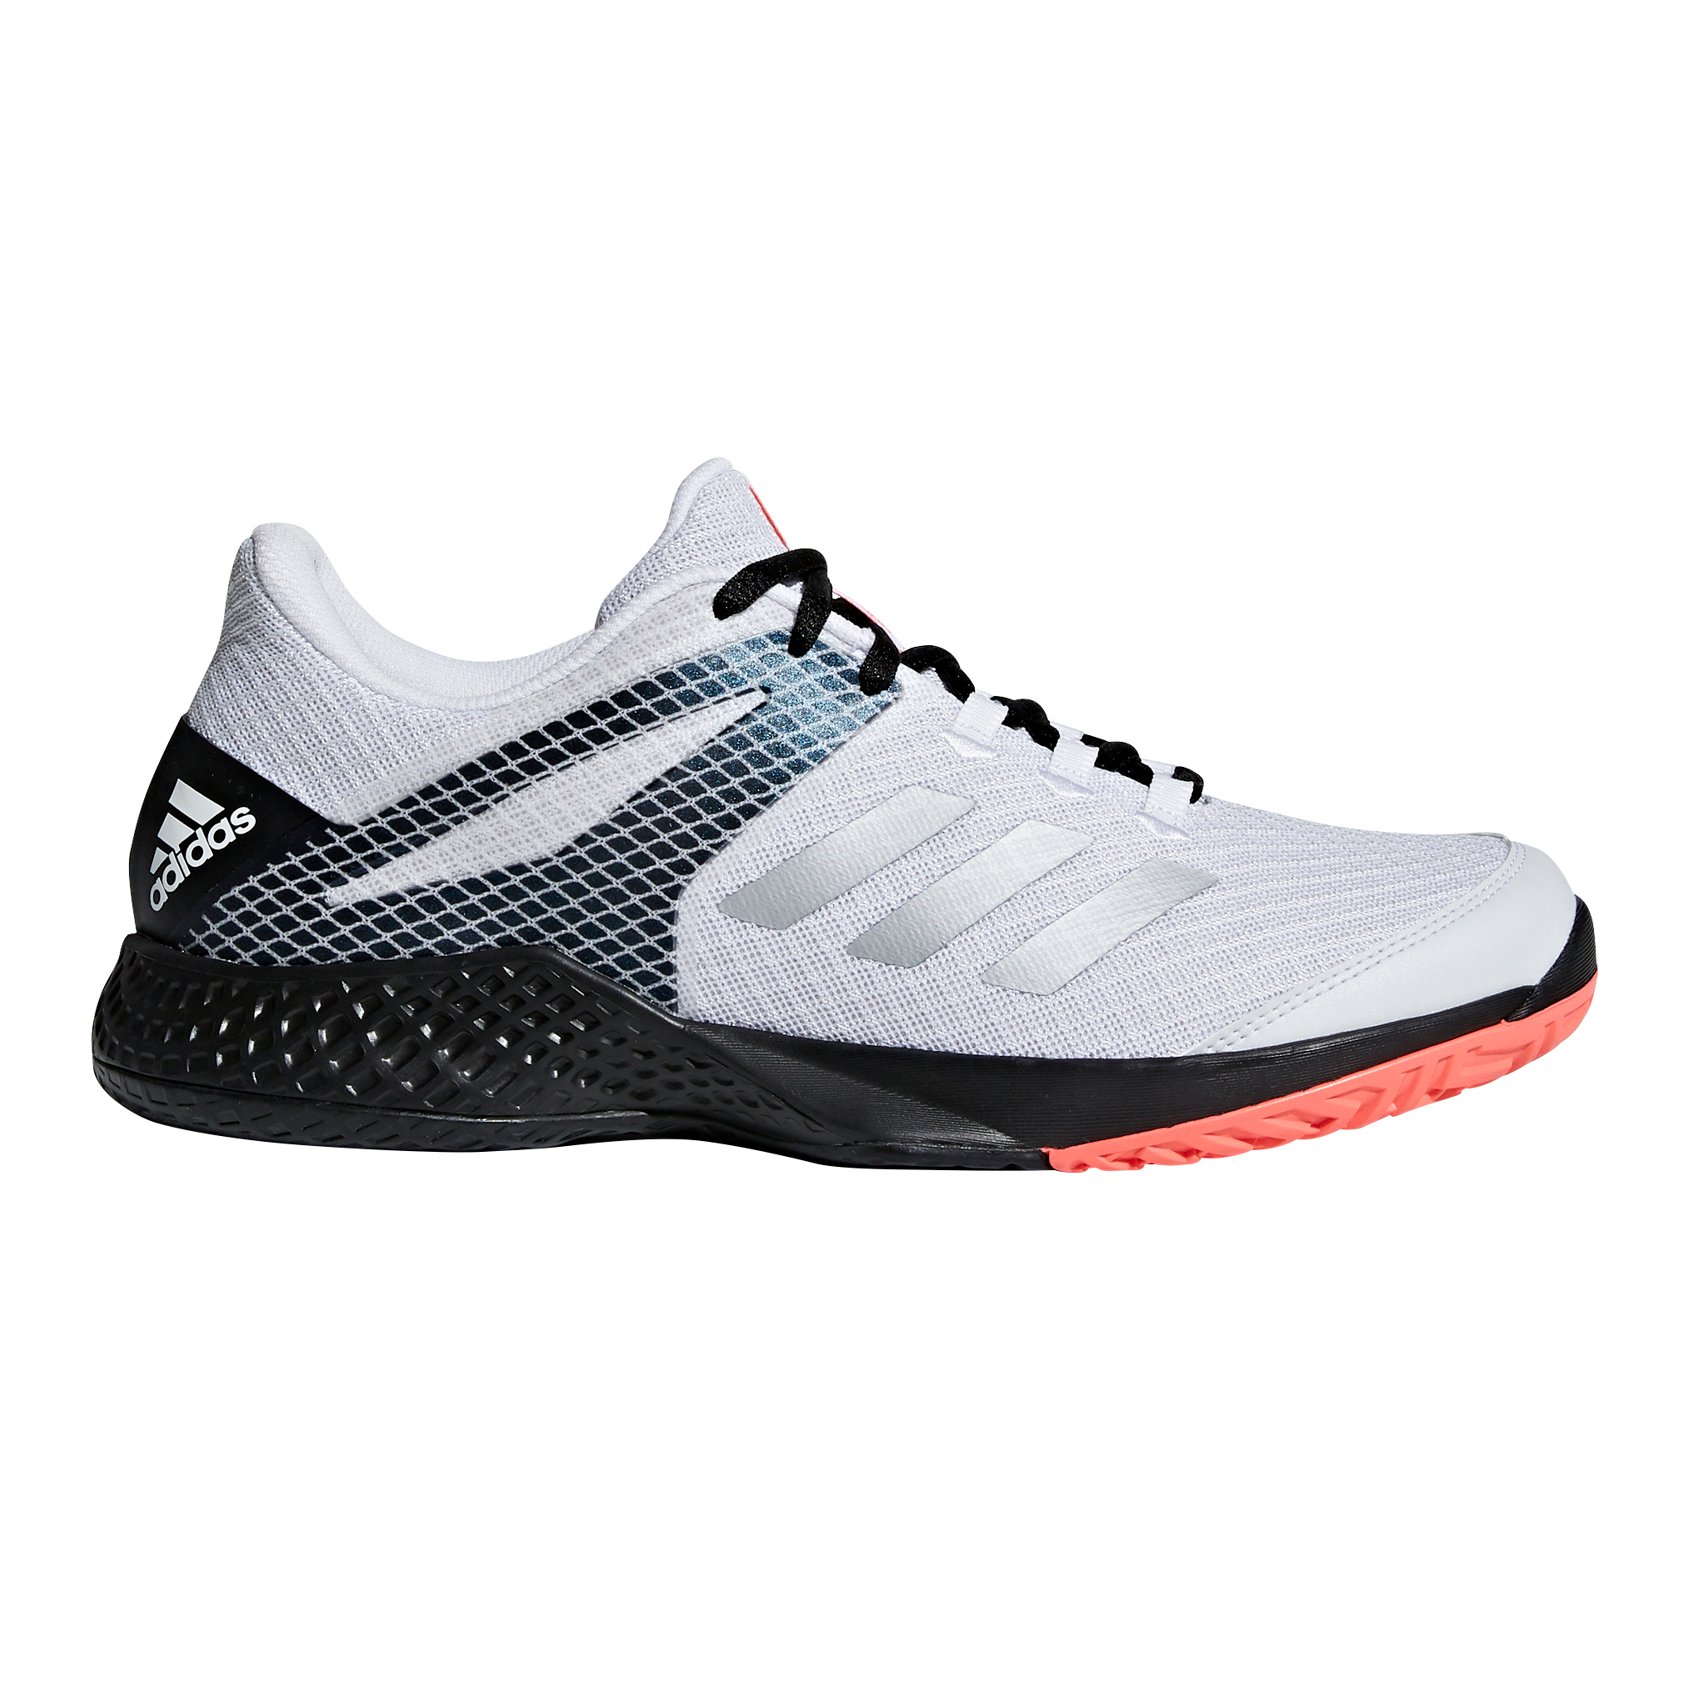 adidas adizero club tennis shoes review